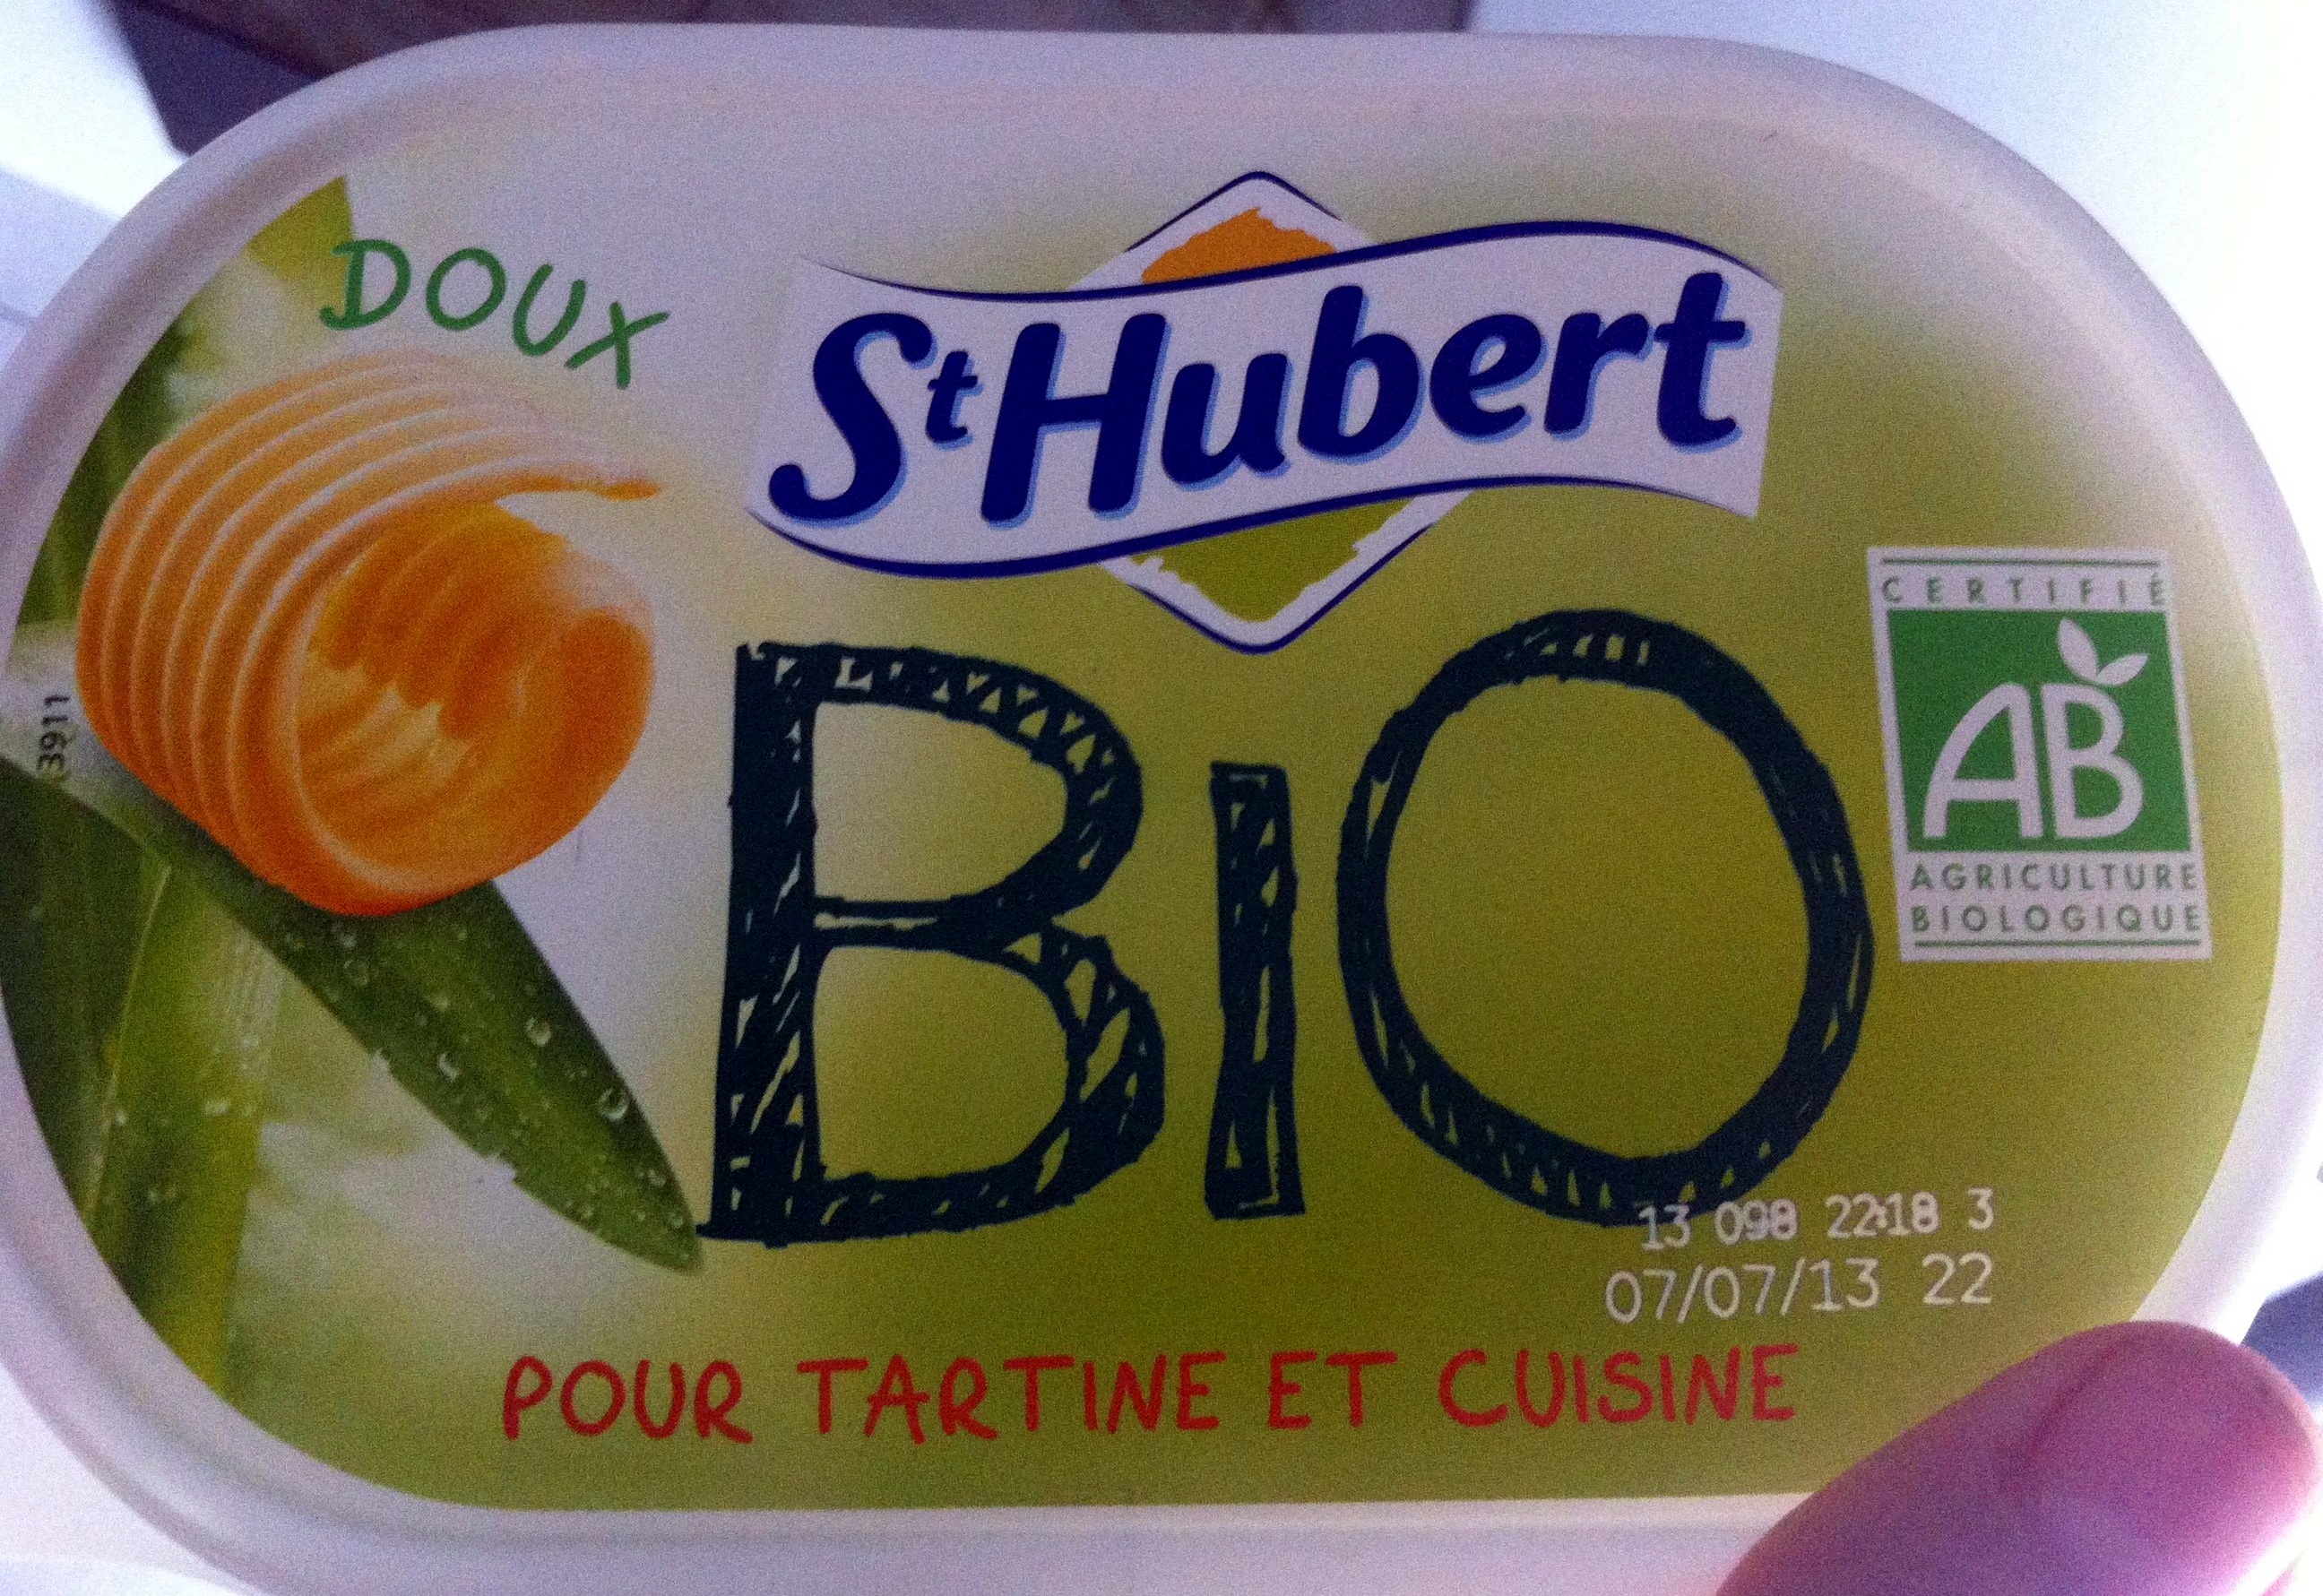 St Hubert Bio (Doux, Tartine et Cuisine), (58 % MG) - Produkt - fr